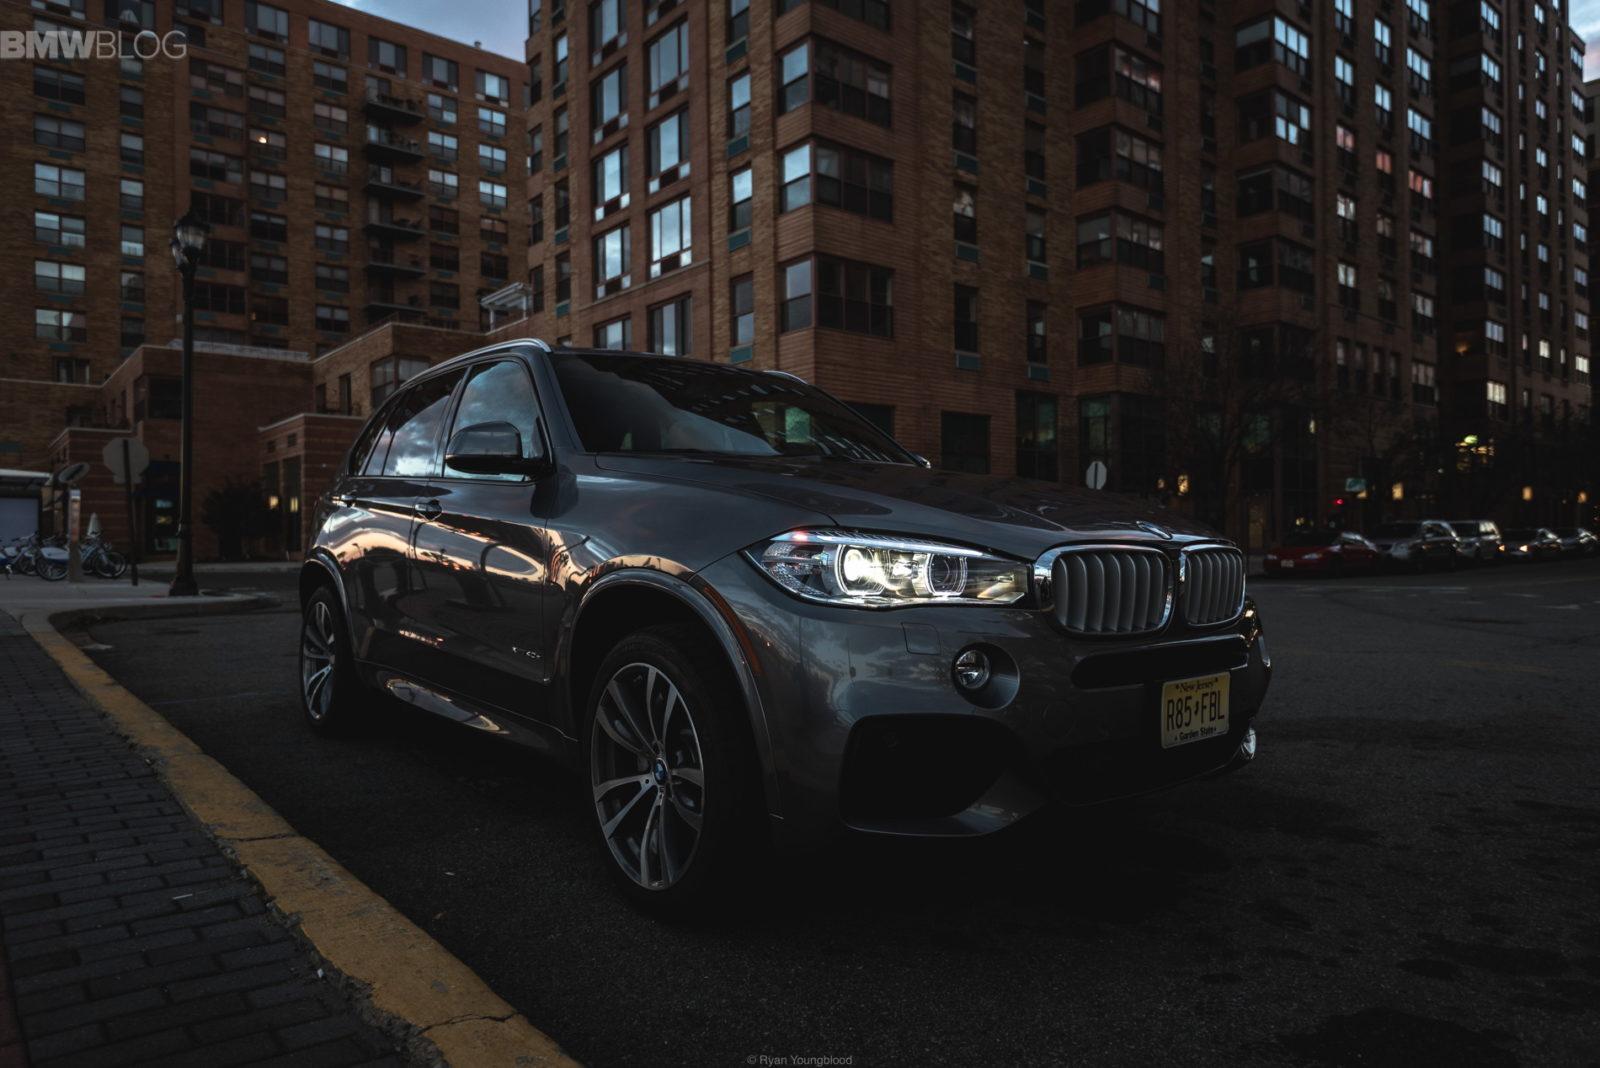 2015-BMW-X5-xDrive40e-test-drive-5